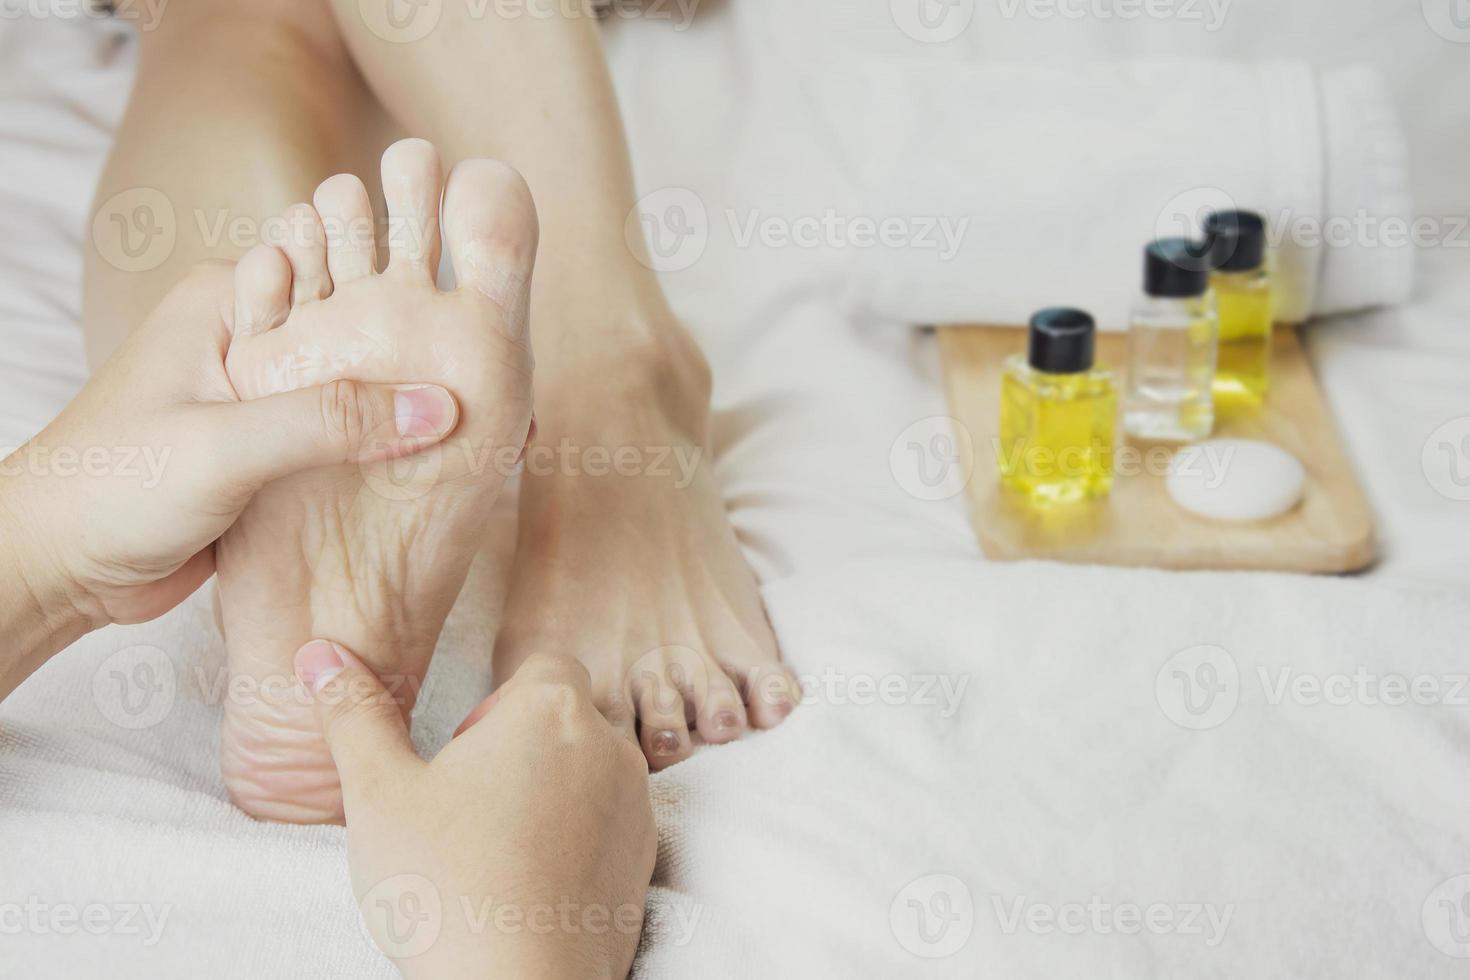 händer av en professionell fot massager med oljor och hälsa vård Produkter på vit säng. begrepp av hälsa vård, avslappning, fot spa behandling. eller produkt introduktion för kvinnors fot spa foto